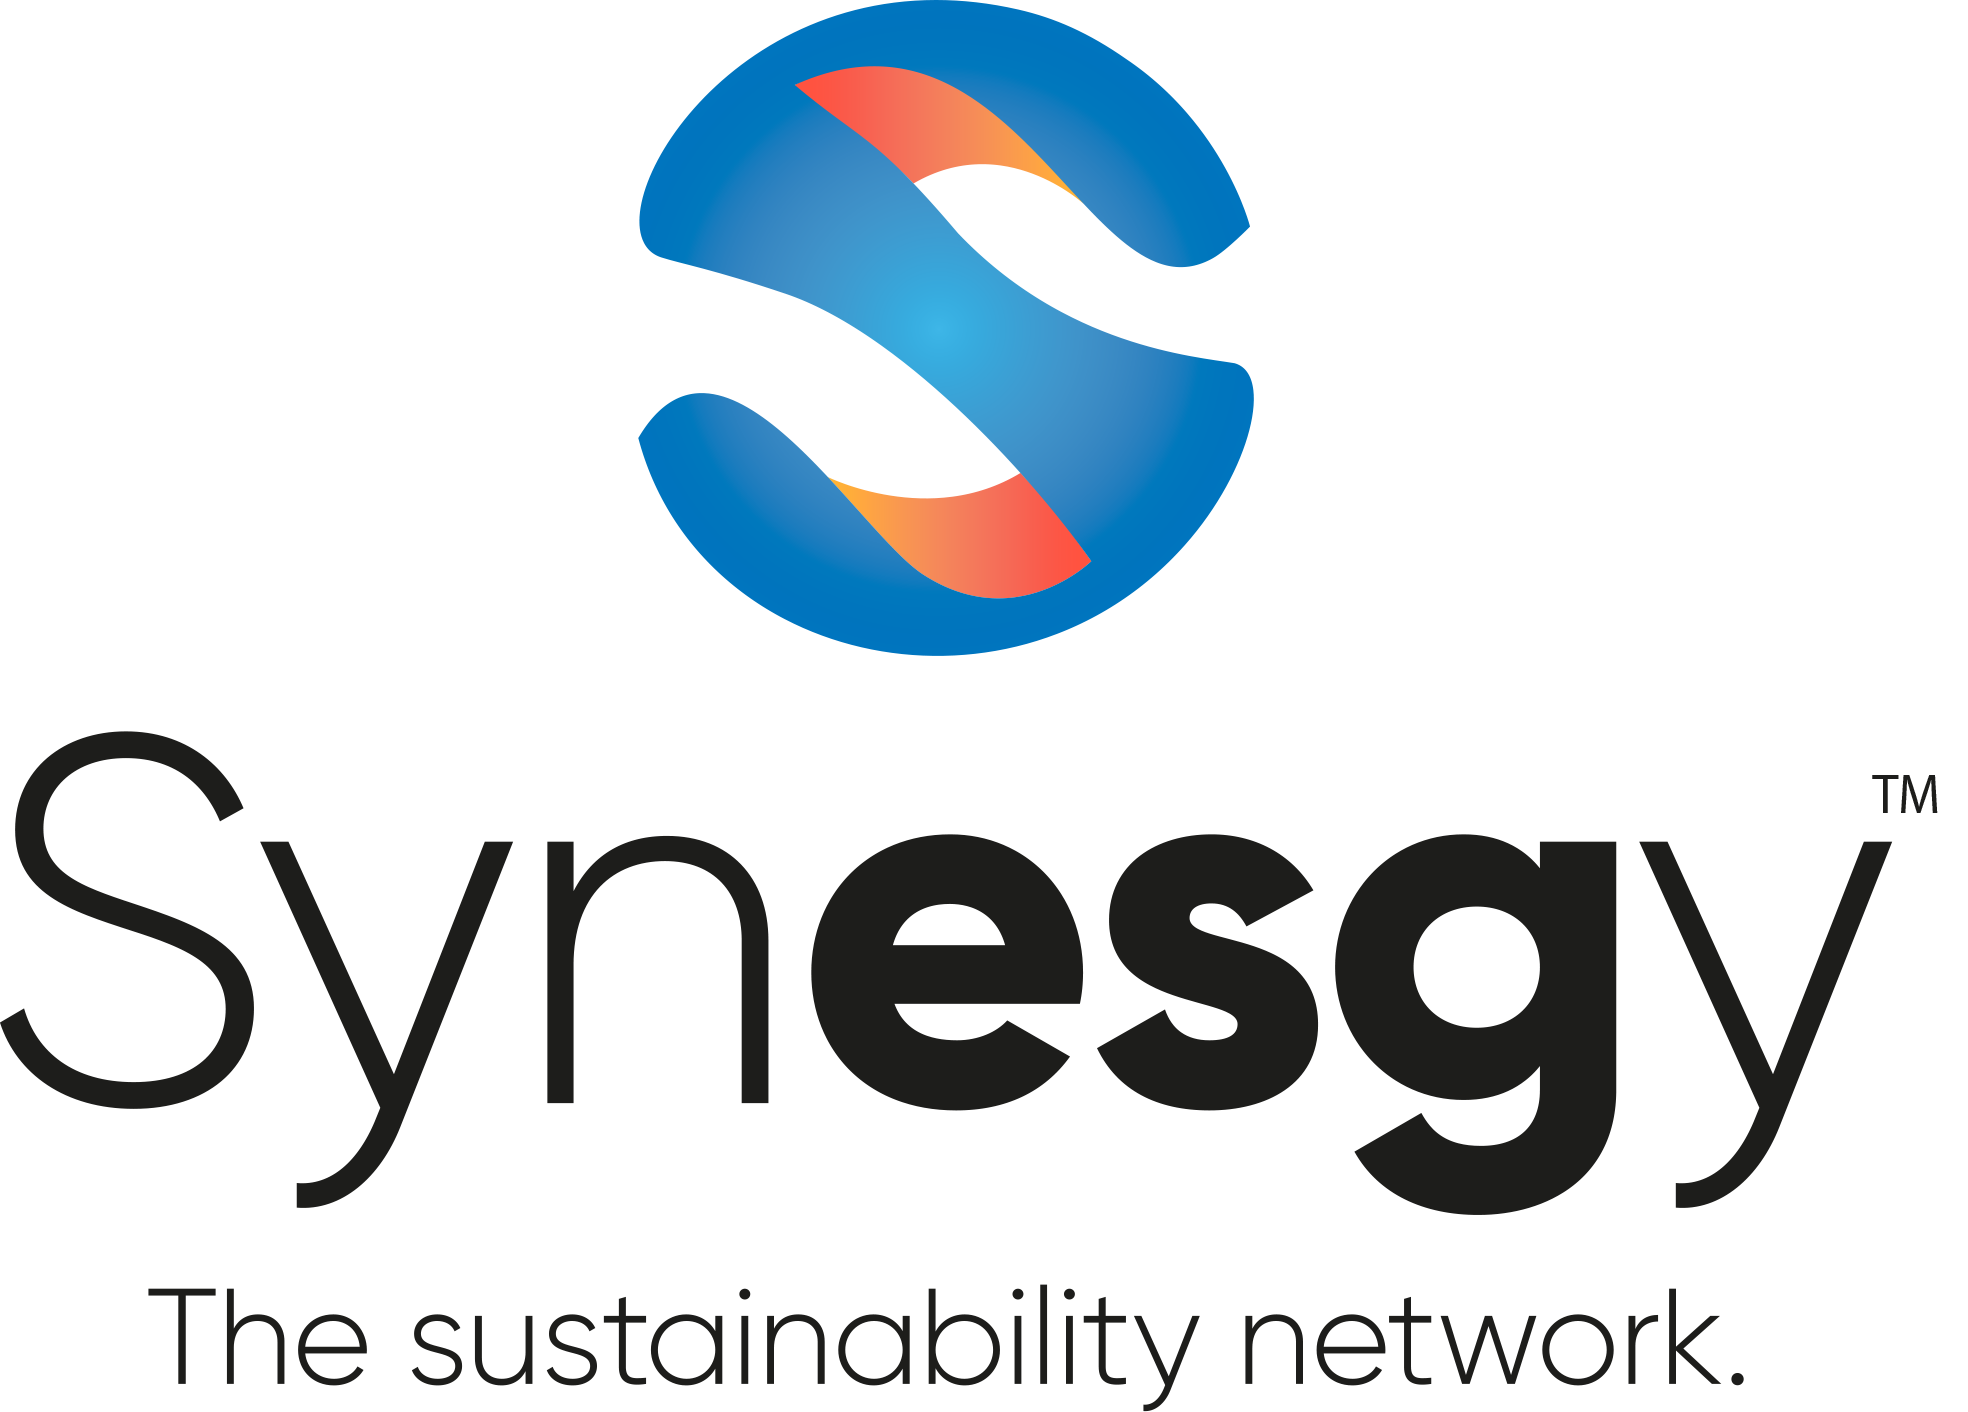 Certificato di Synesgy